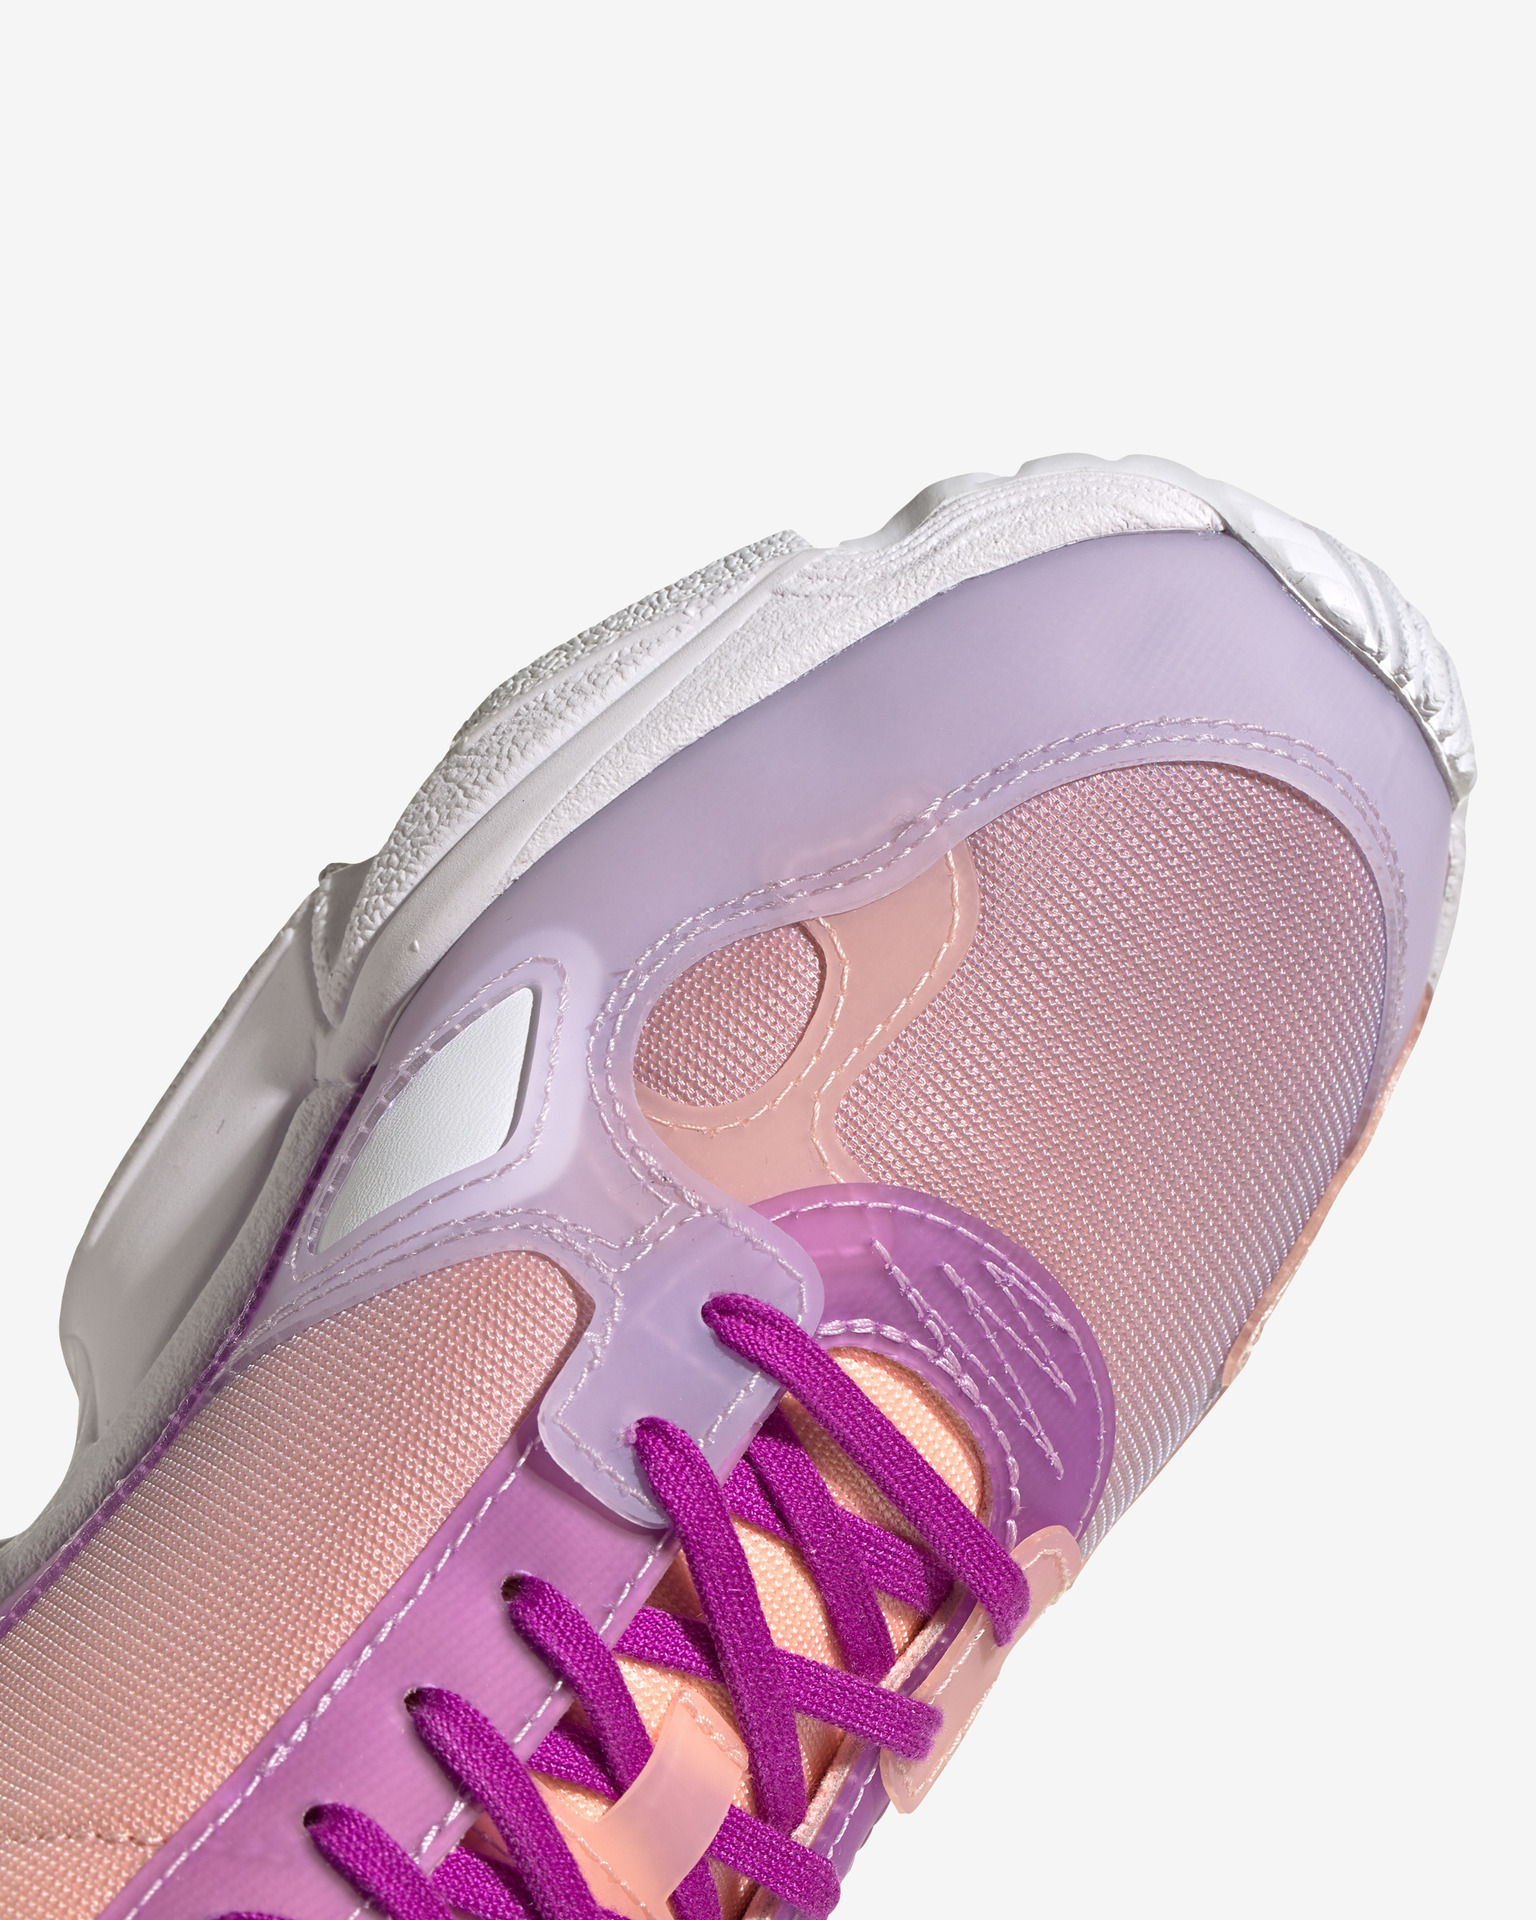 Adidas Originals Women's Falcon Sneakers - White/Pink | Catch.com.au